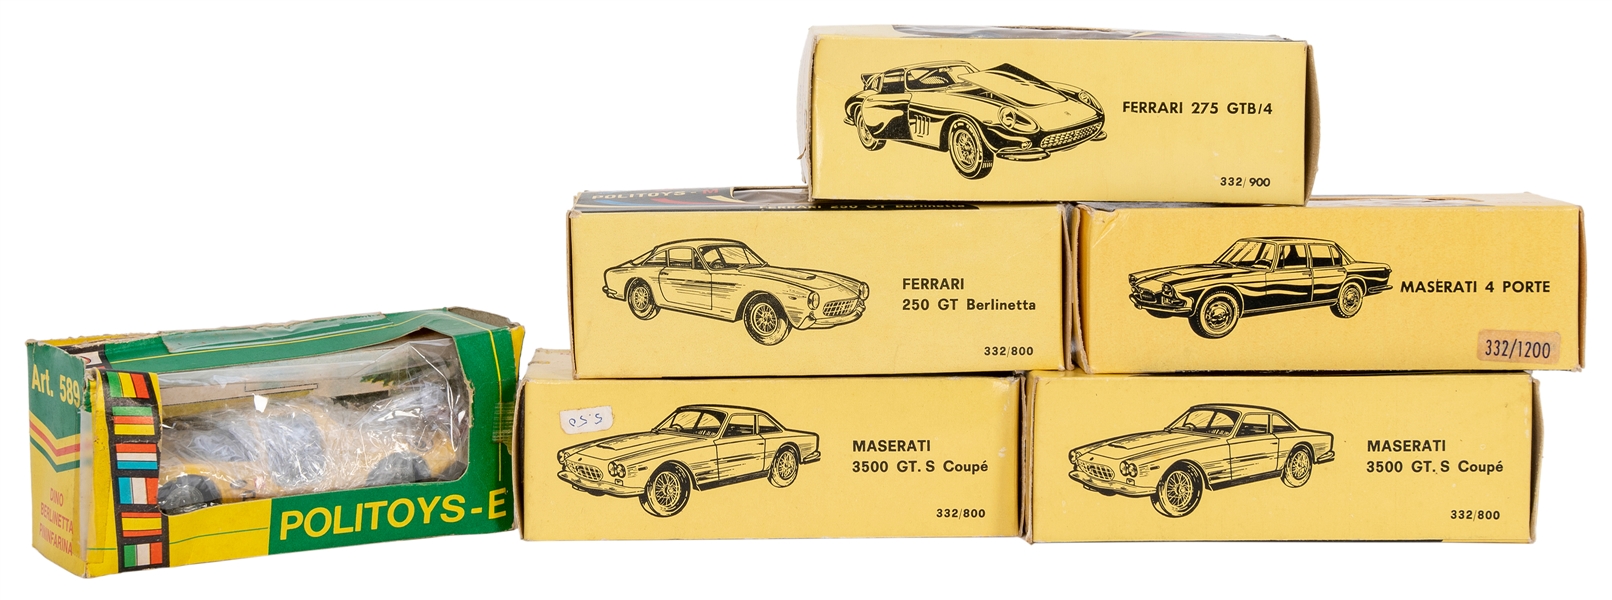  Politoys Ferrari and Maserati Diecast Vehicles in Original ...